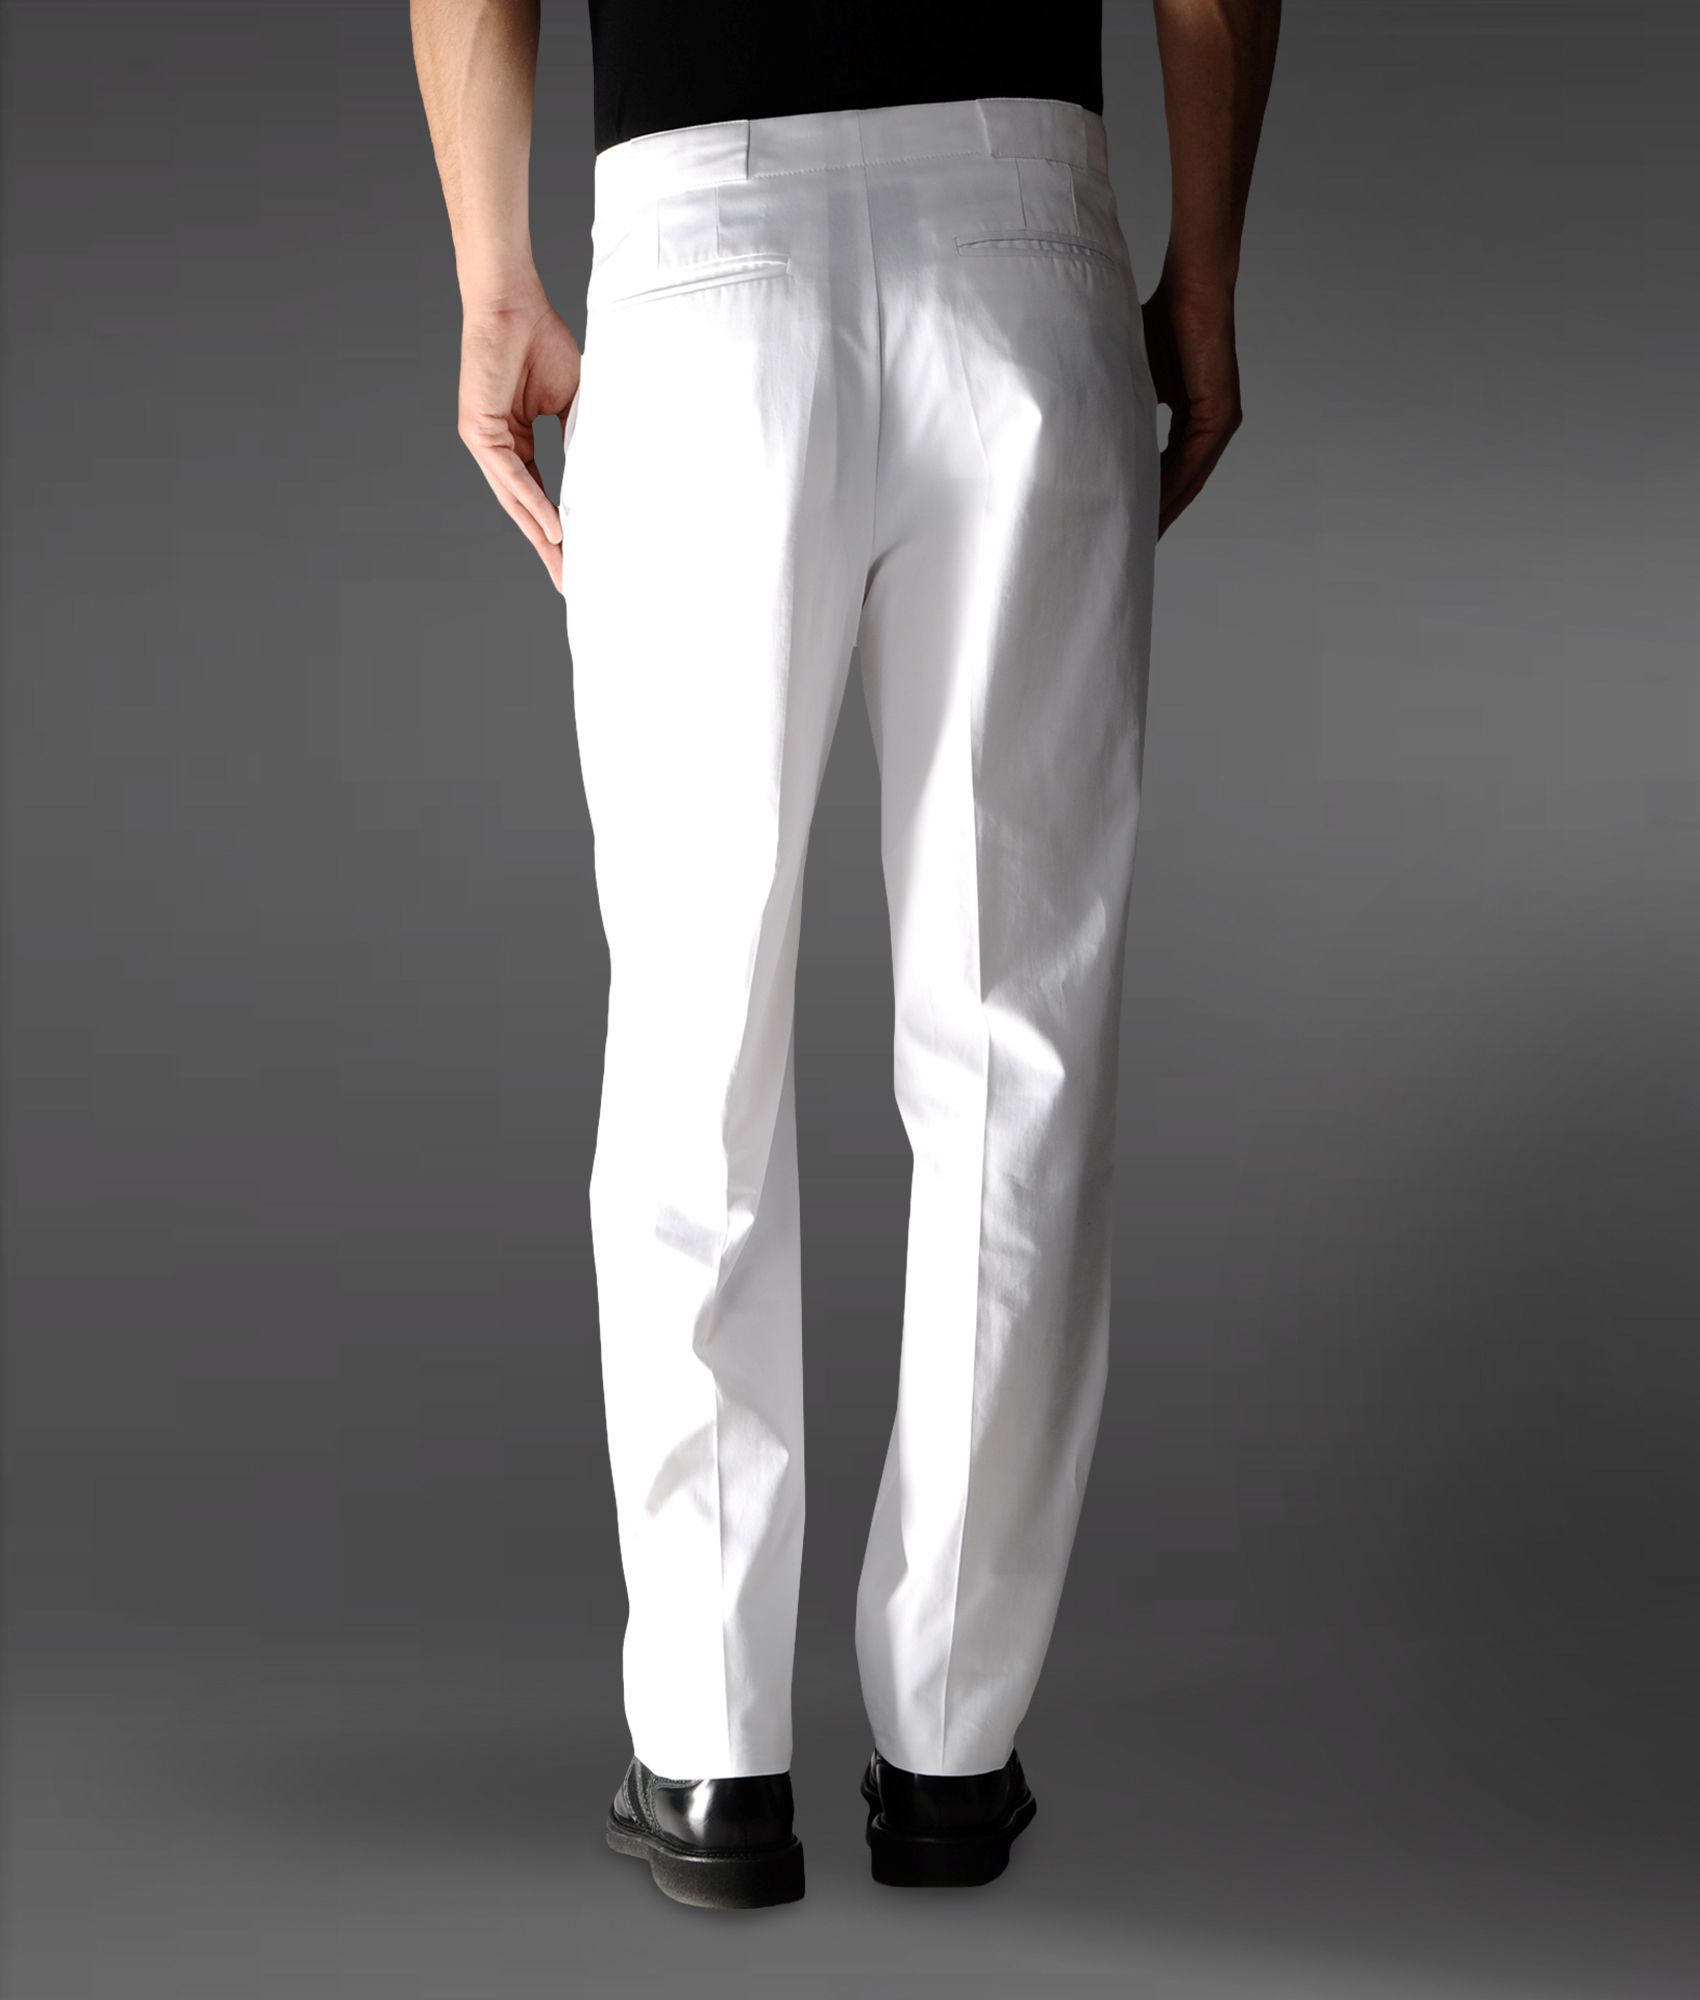 Emporio Armani Baggy Pants in Light Gabardine in White for Men - Lyst